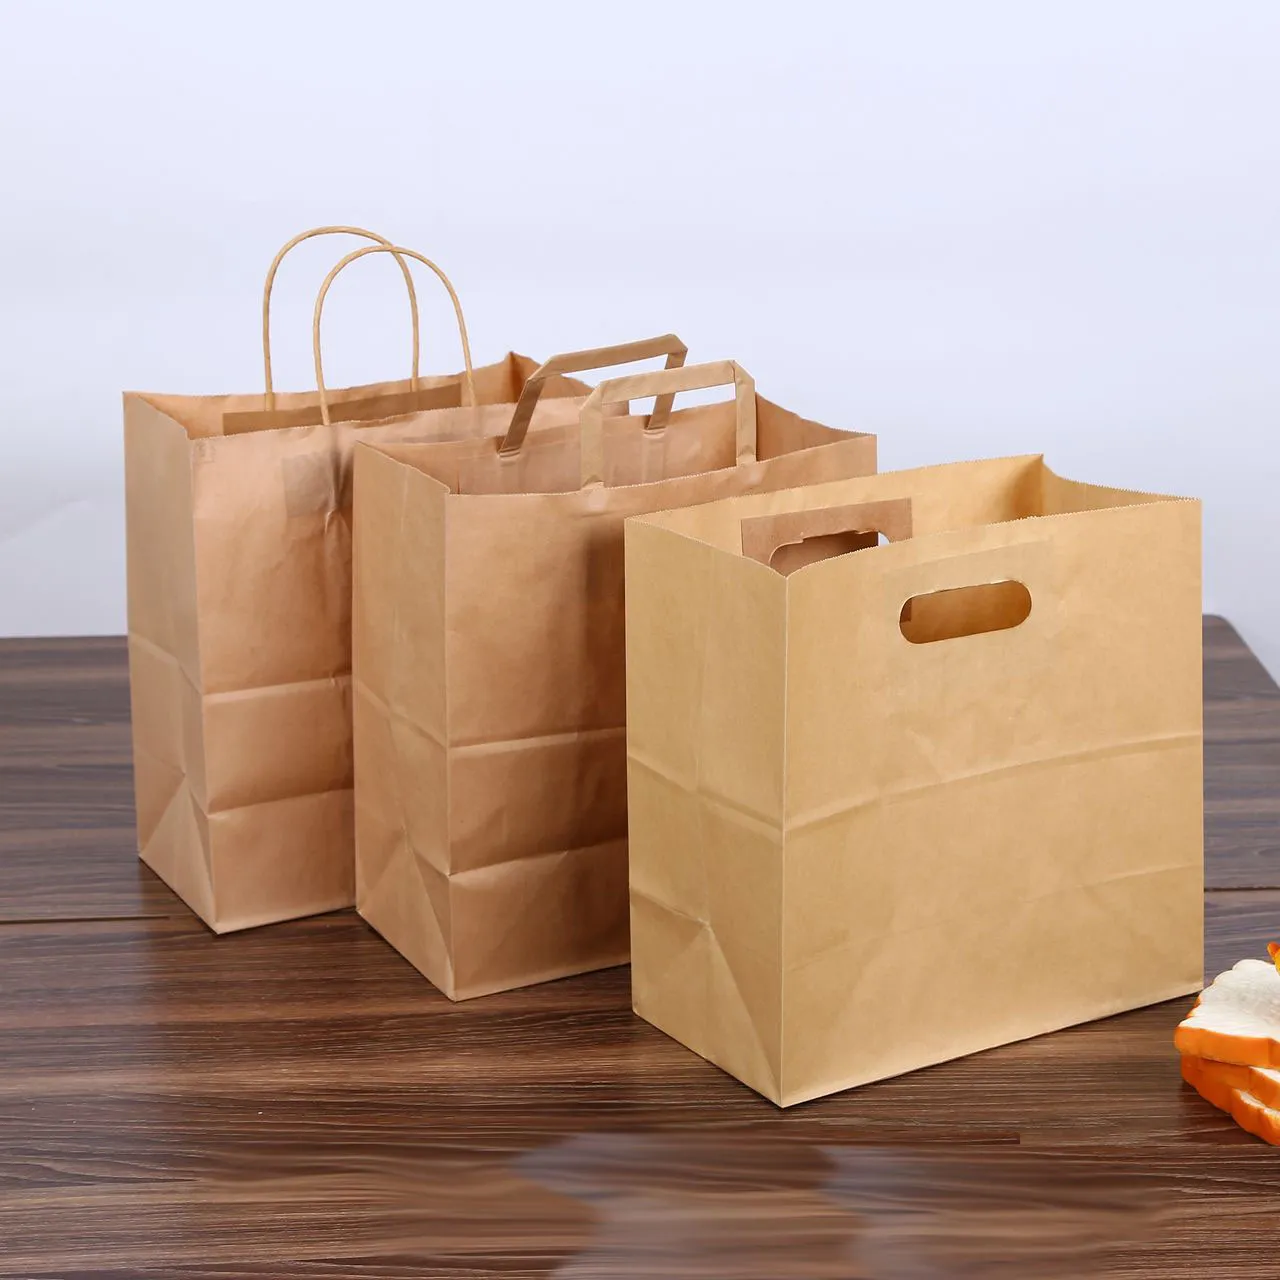 28x28+15 cm kraft paper bread bag packaging tote handle brown die cut baguette punching baking portable paper bag custom LOGO